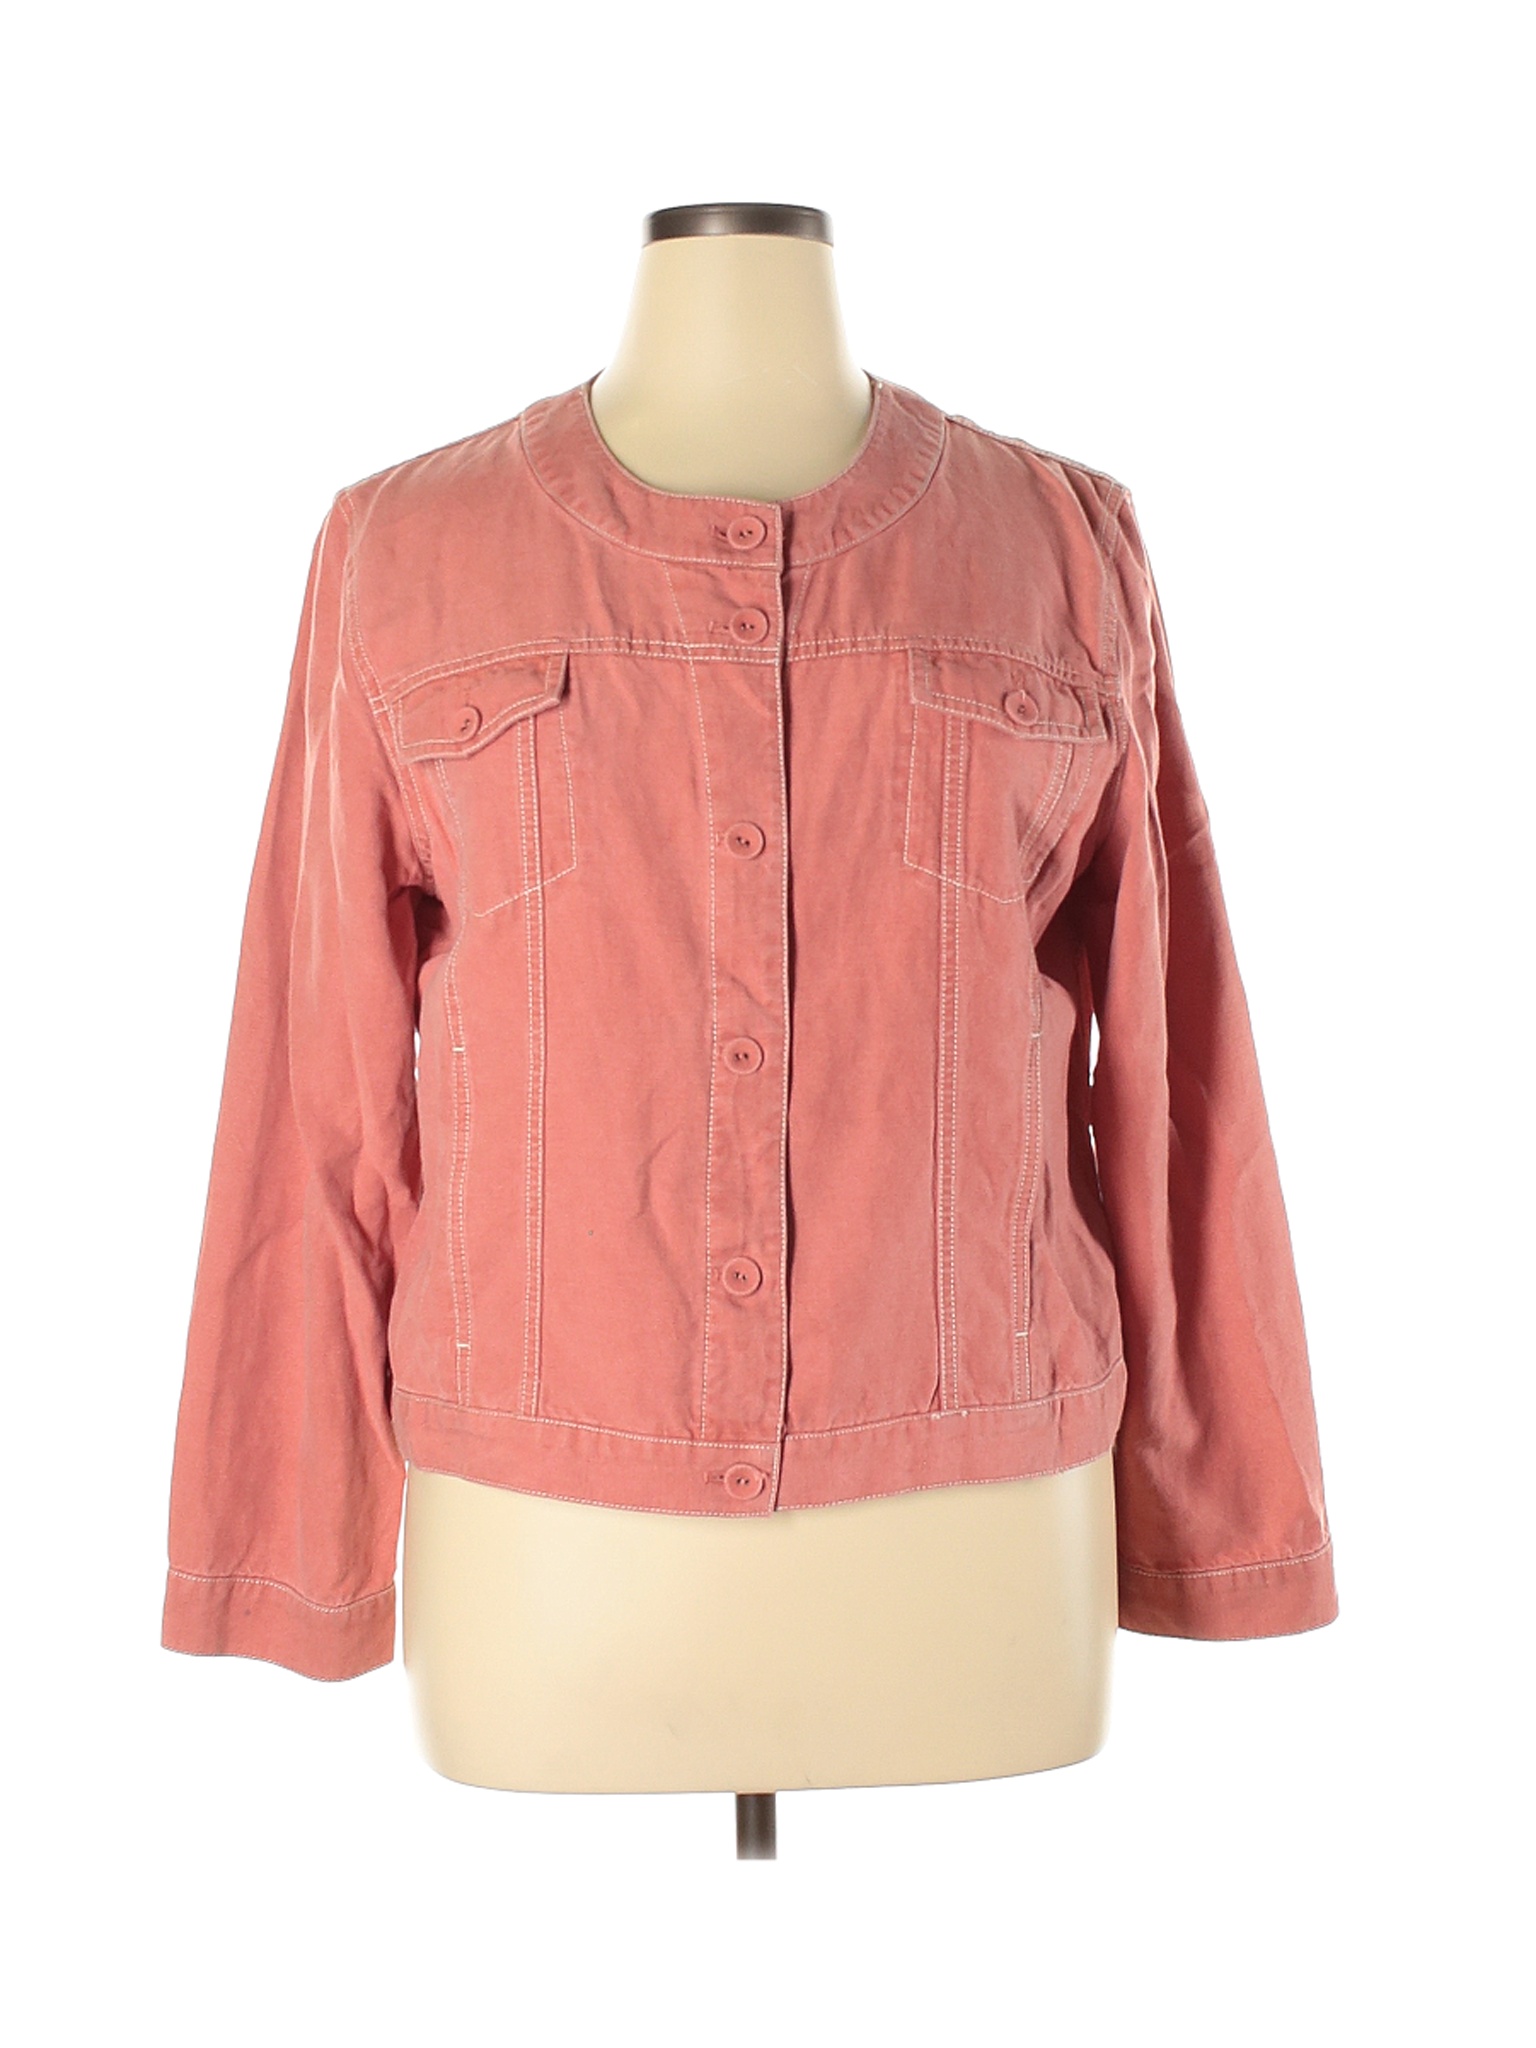 J.jill Women Pink Jacket XL | eBay